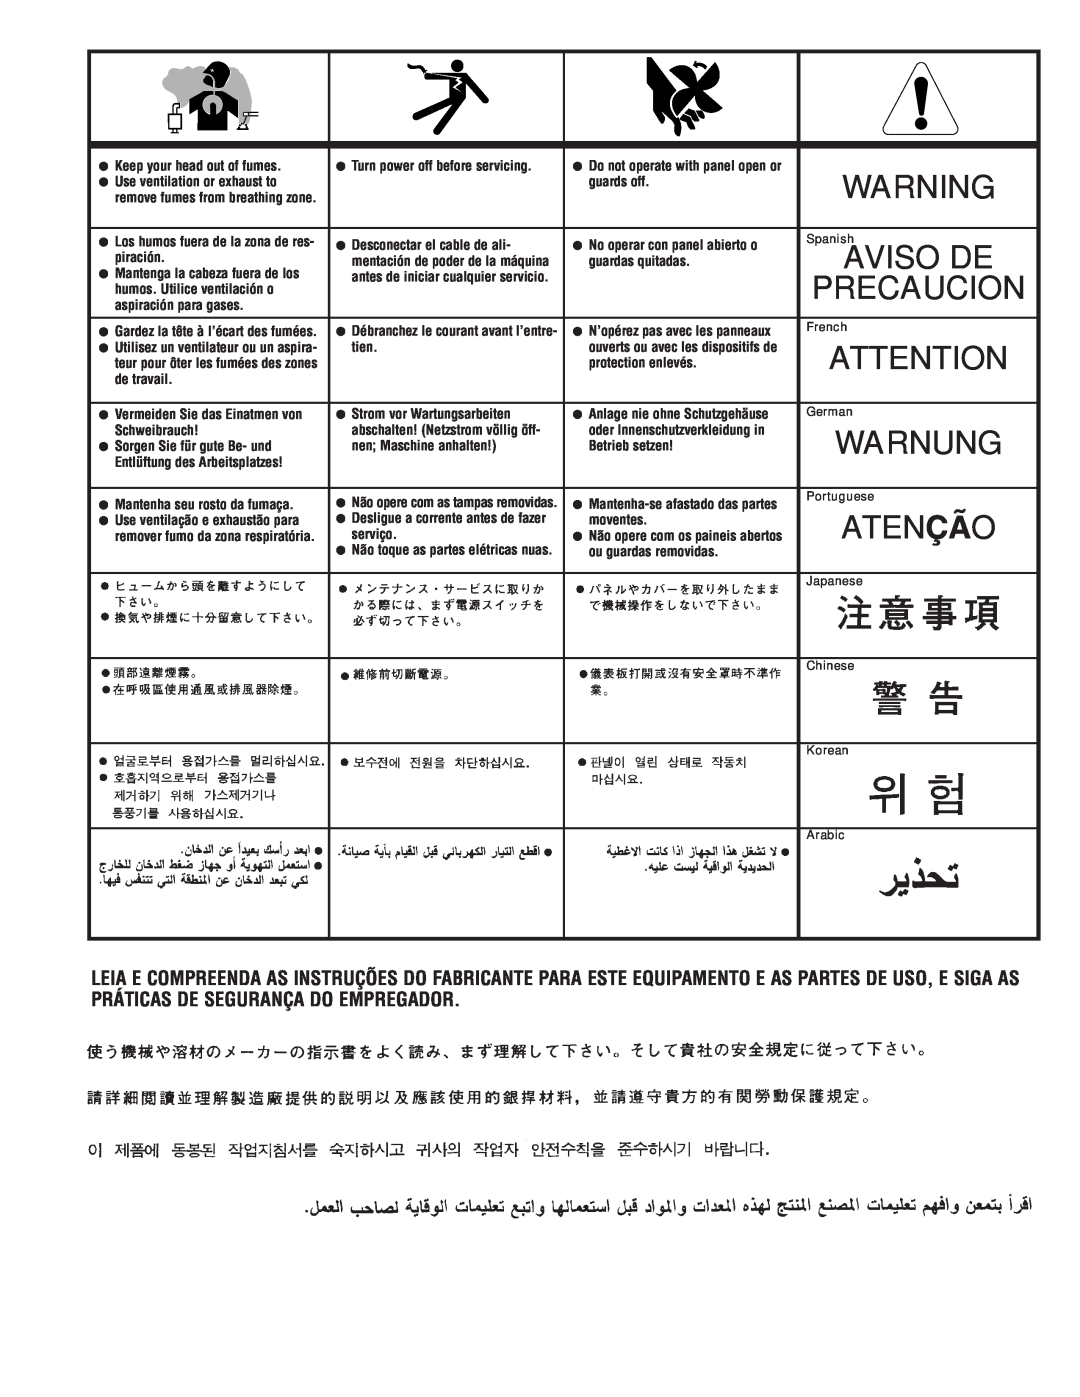 Lincoln Electric IM700-D manual Aviso De, Warnung, Atenção, Precaucion 